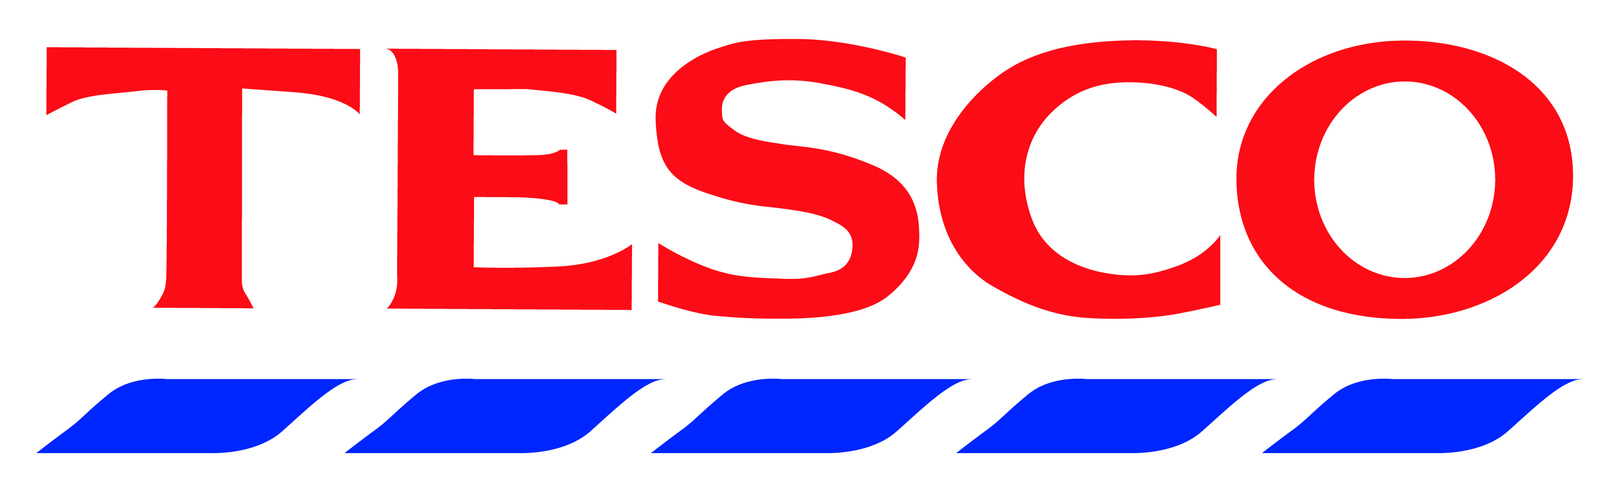 Logo_Tesco.jpeg